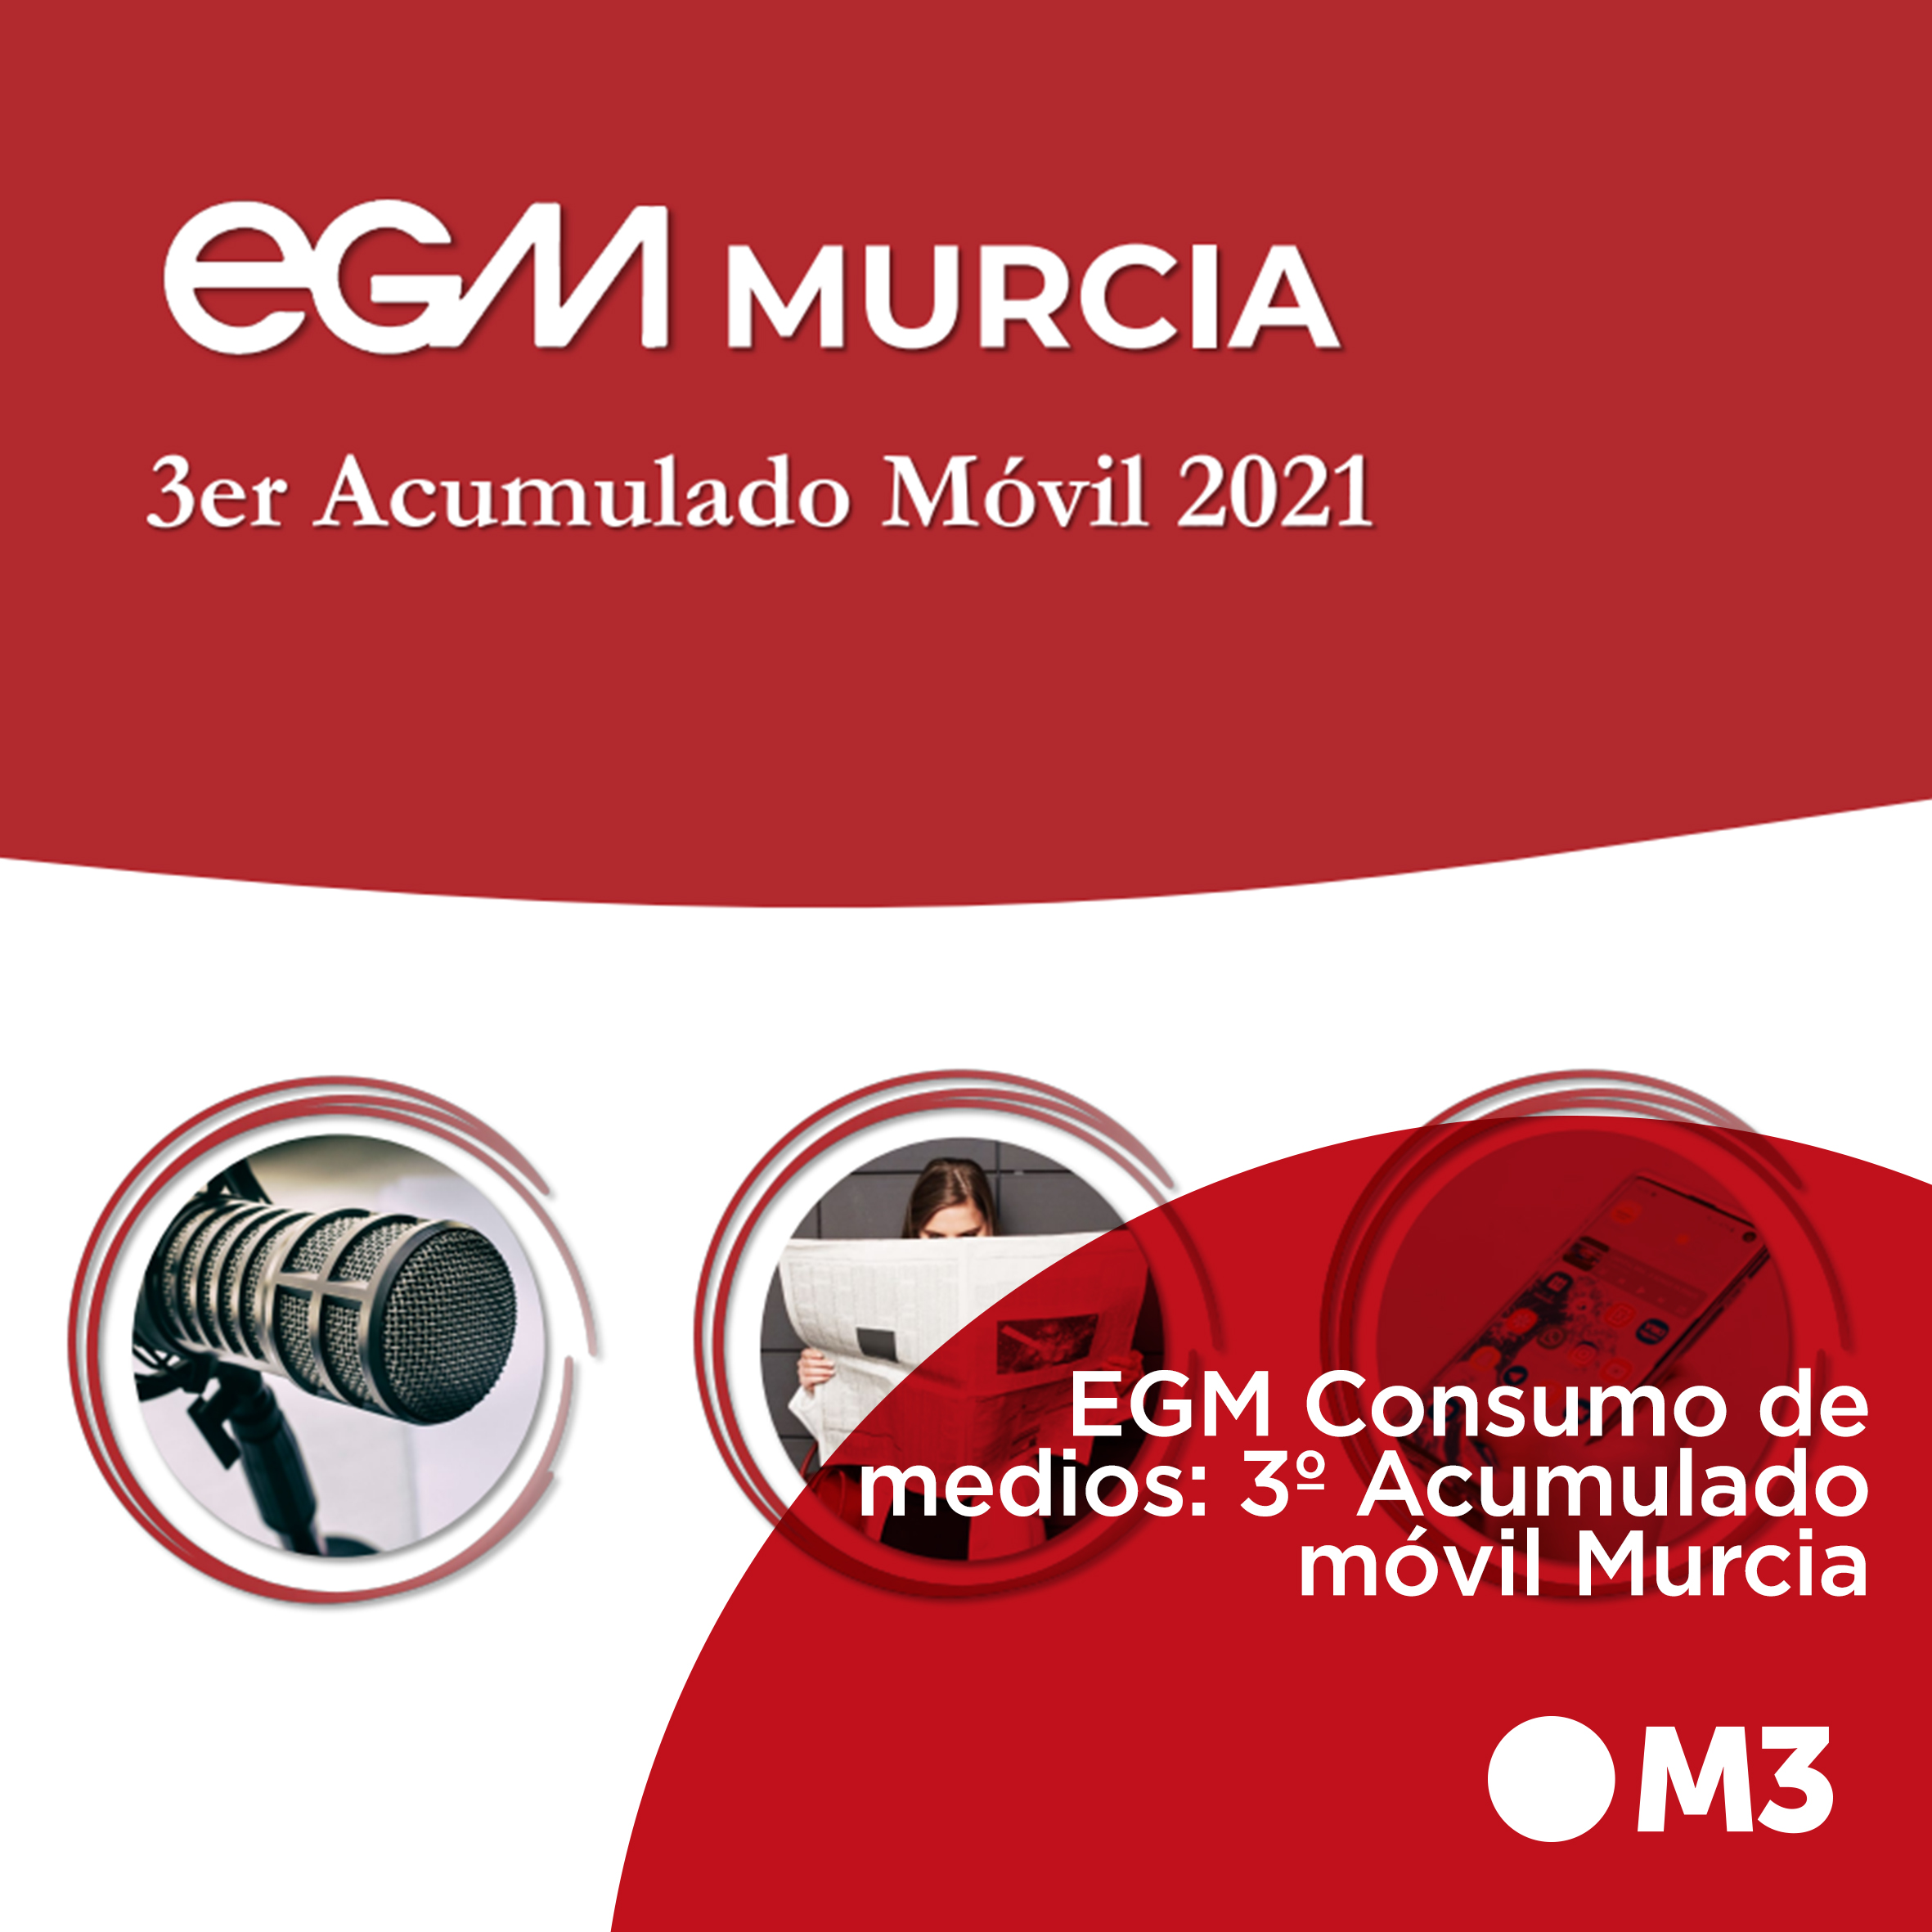 EGM Consumo de medios: 3º Acumulado móvil Murcia